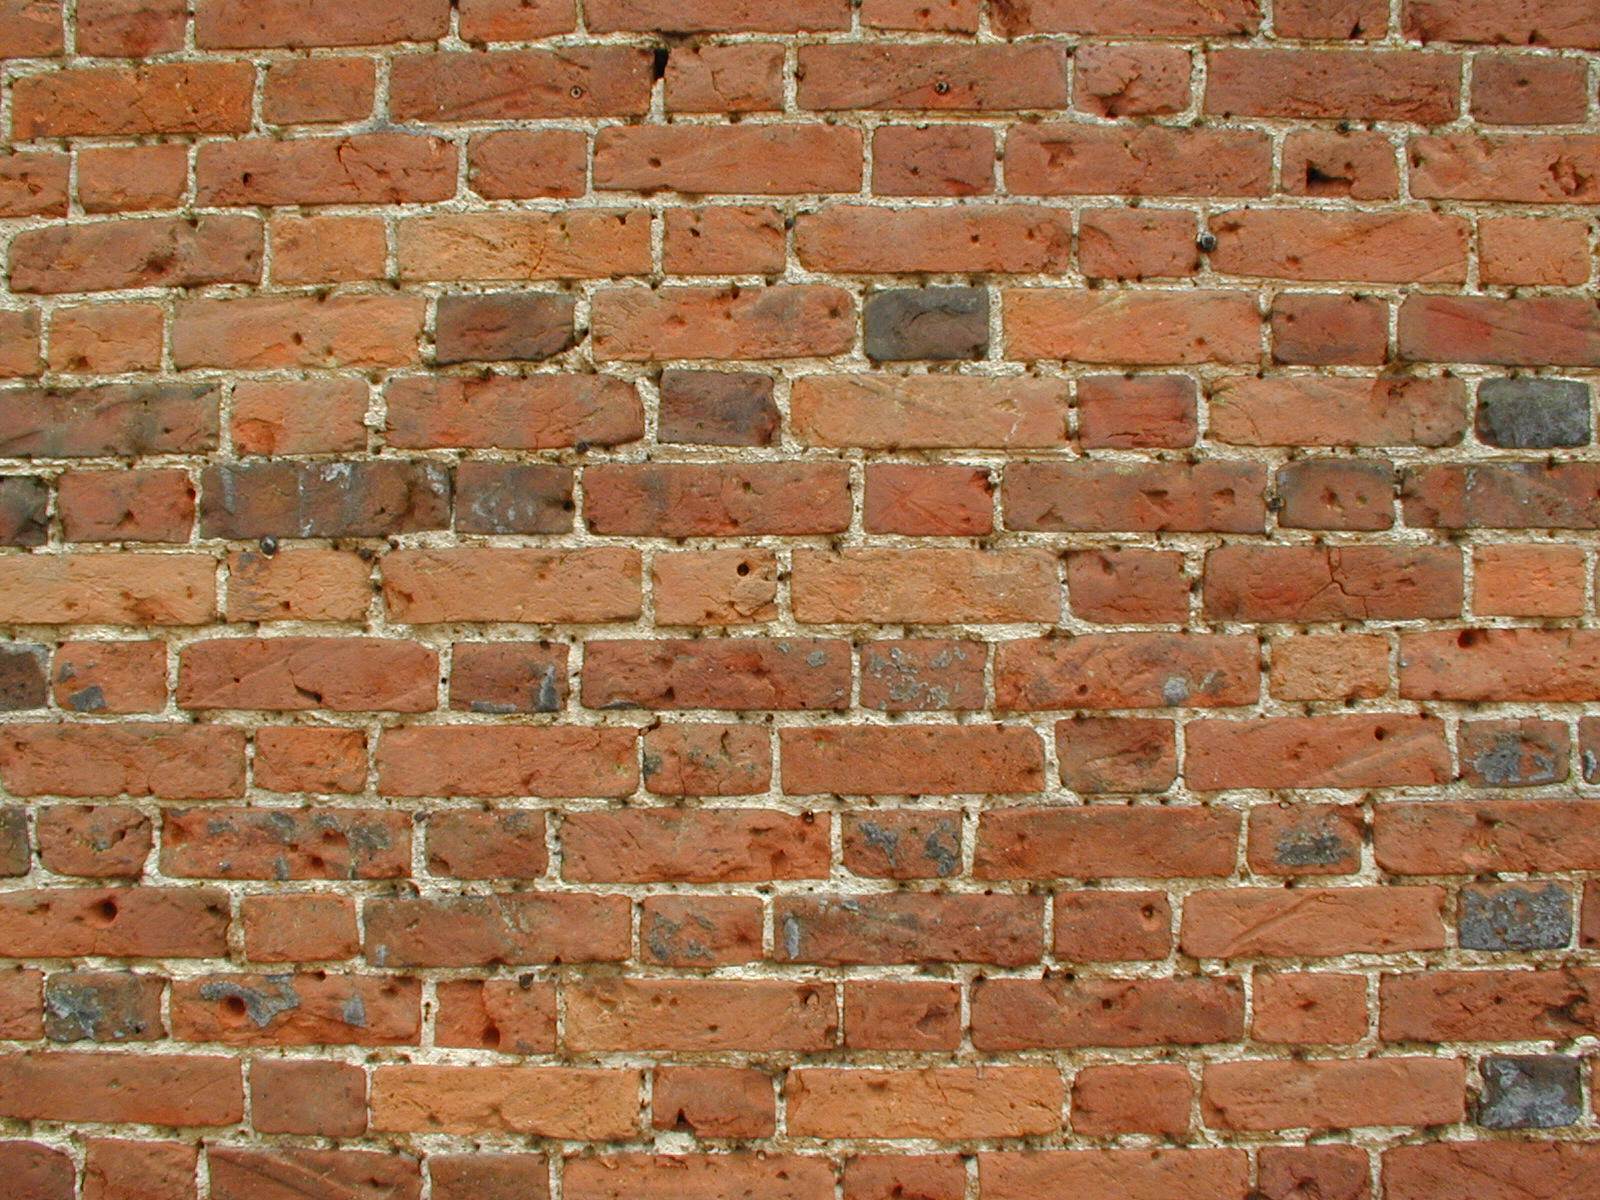 brick wall wallpaper,brickwork,brick,wall,bricklayer,stone wall